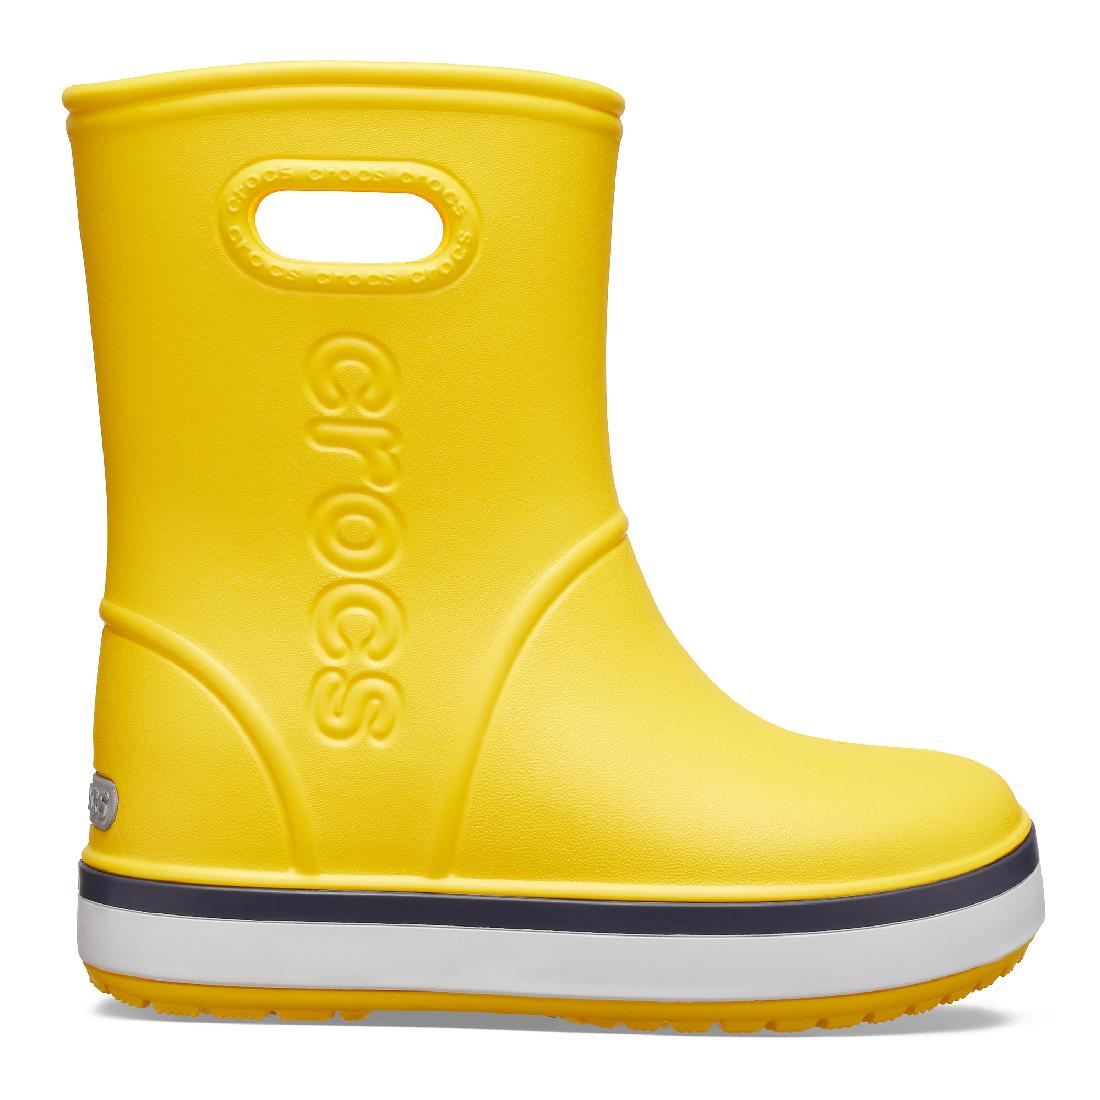 Crocs Crocband Rain Boot Kinder Gummistiefel Regenstiefel 205827 Gelb 